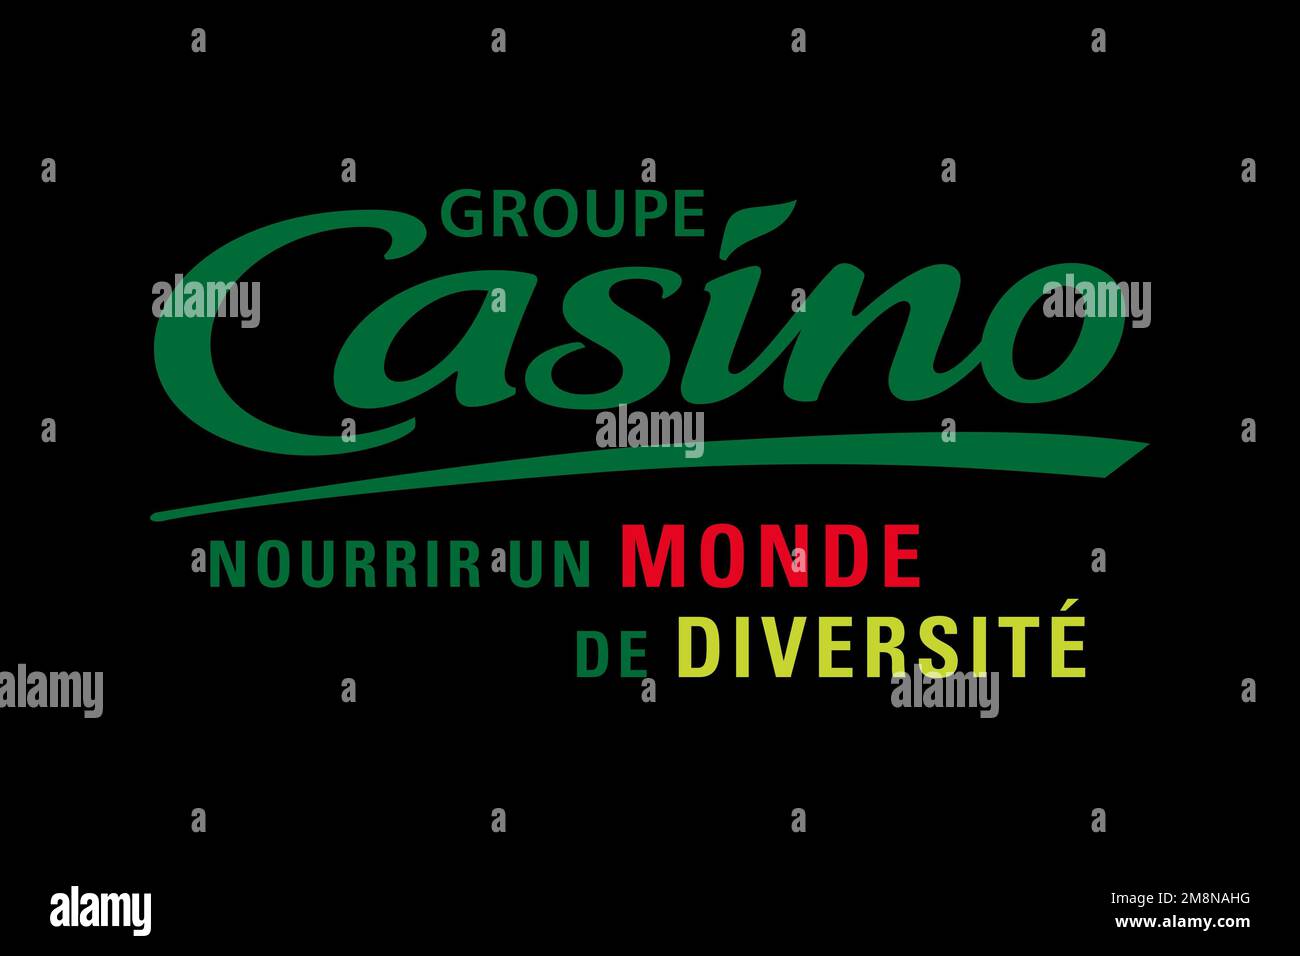 Groupe Casino, Logo, Black background Stock Photo